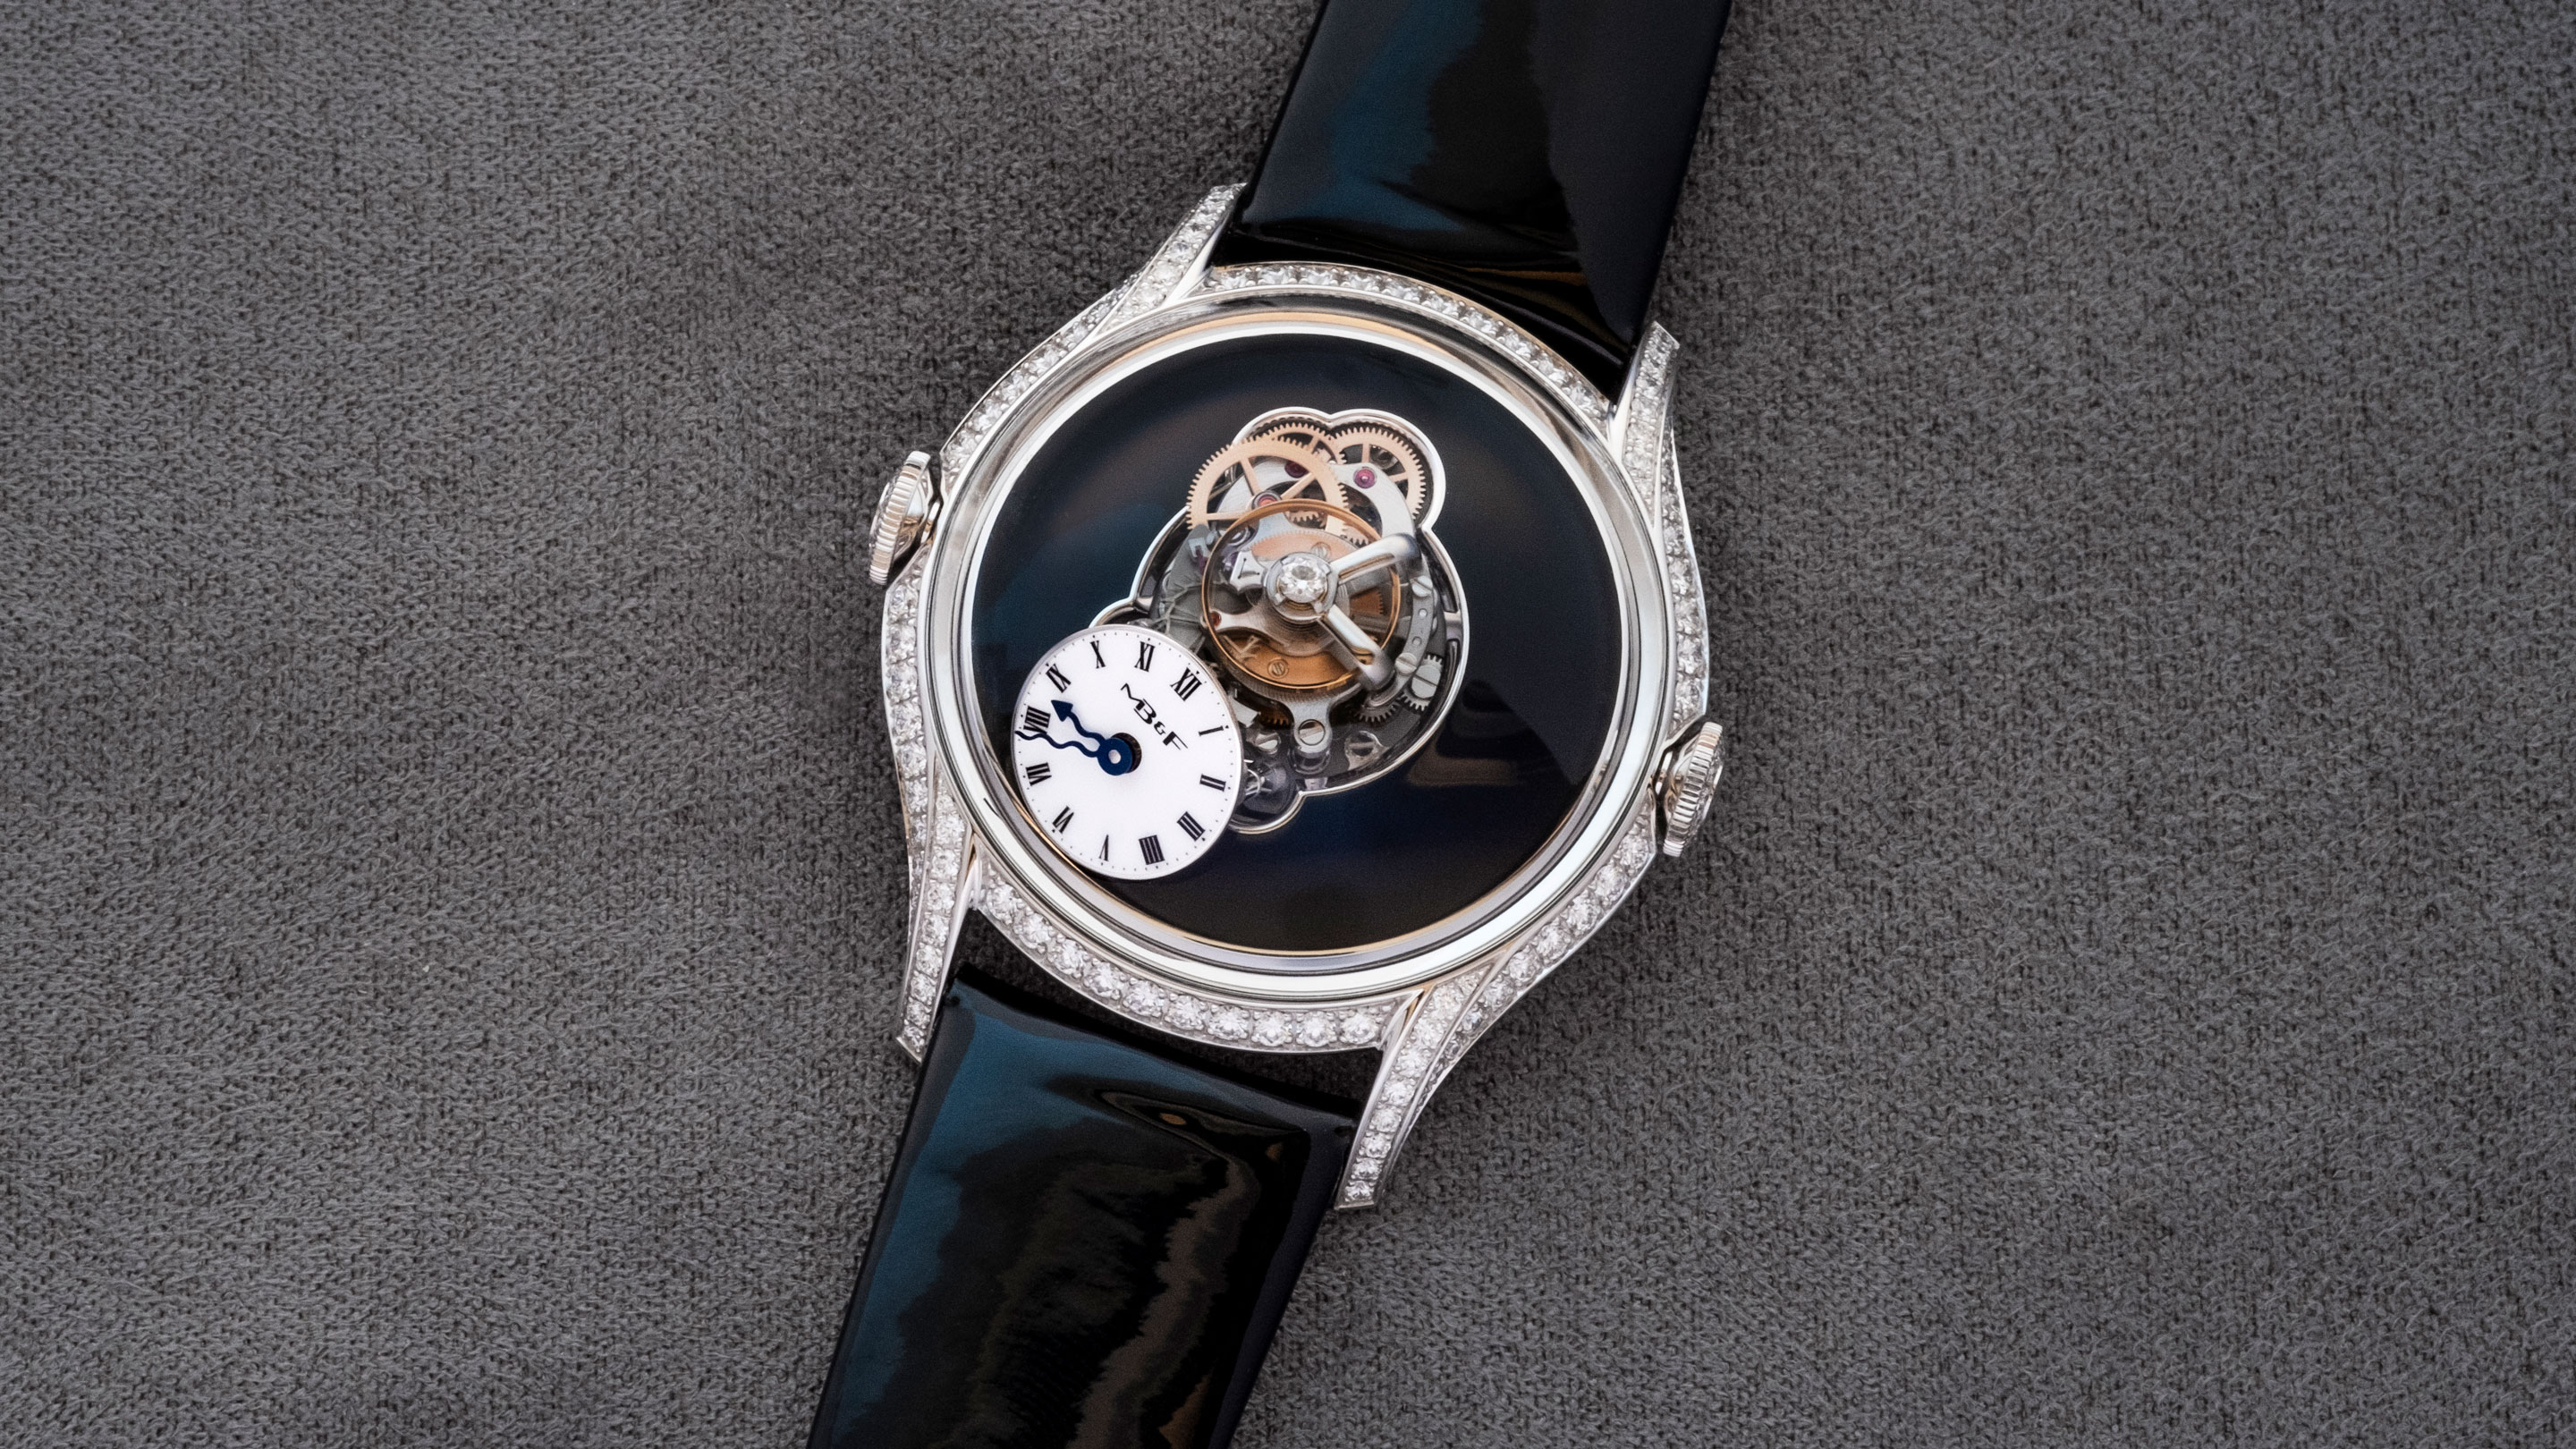 Aquis Depth Gauge - Aquis - Watches - 01 733 7755 4154-Set MB - Oris. Swiss  Watches in Hölstein since 1904.